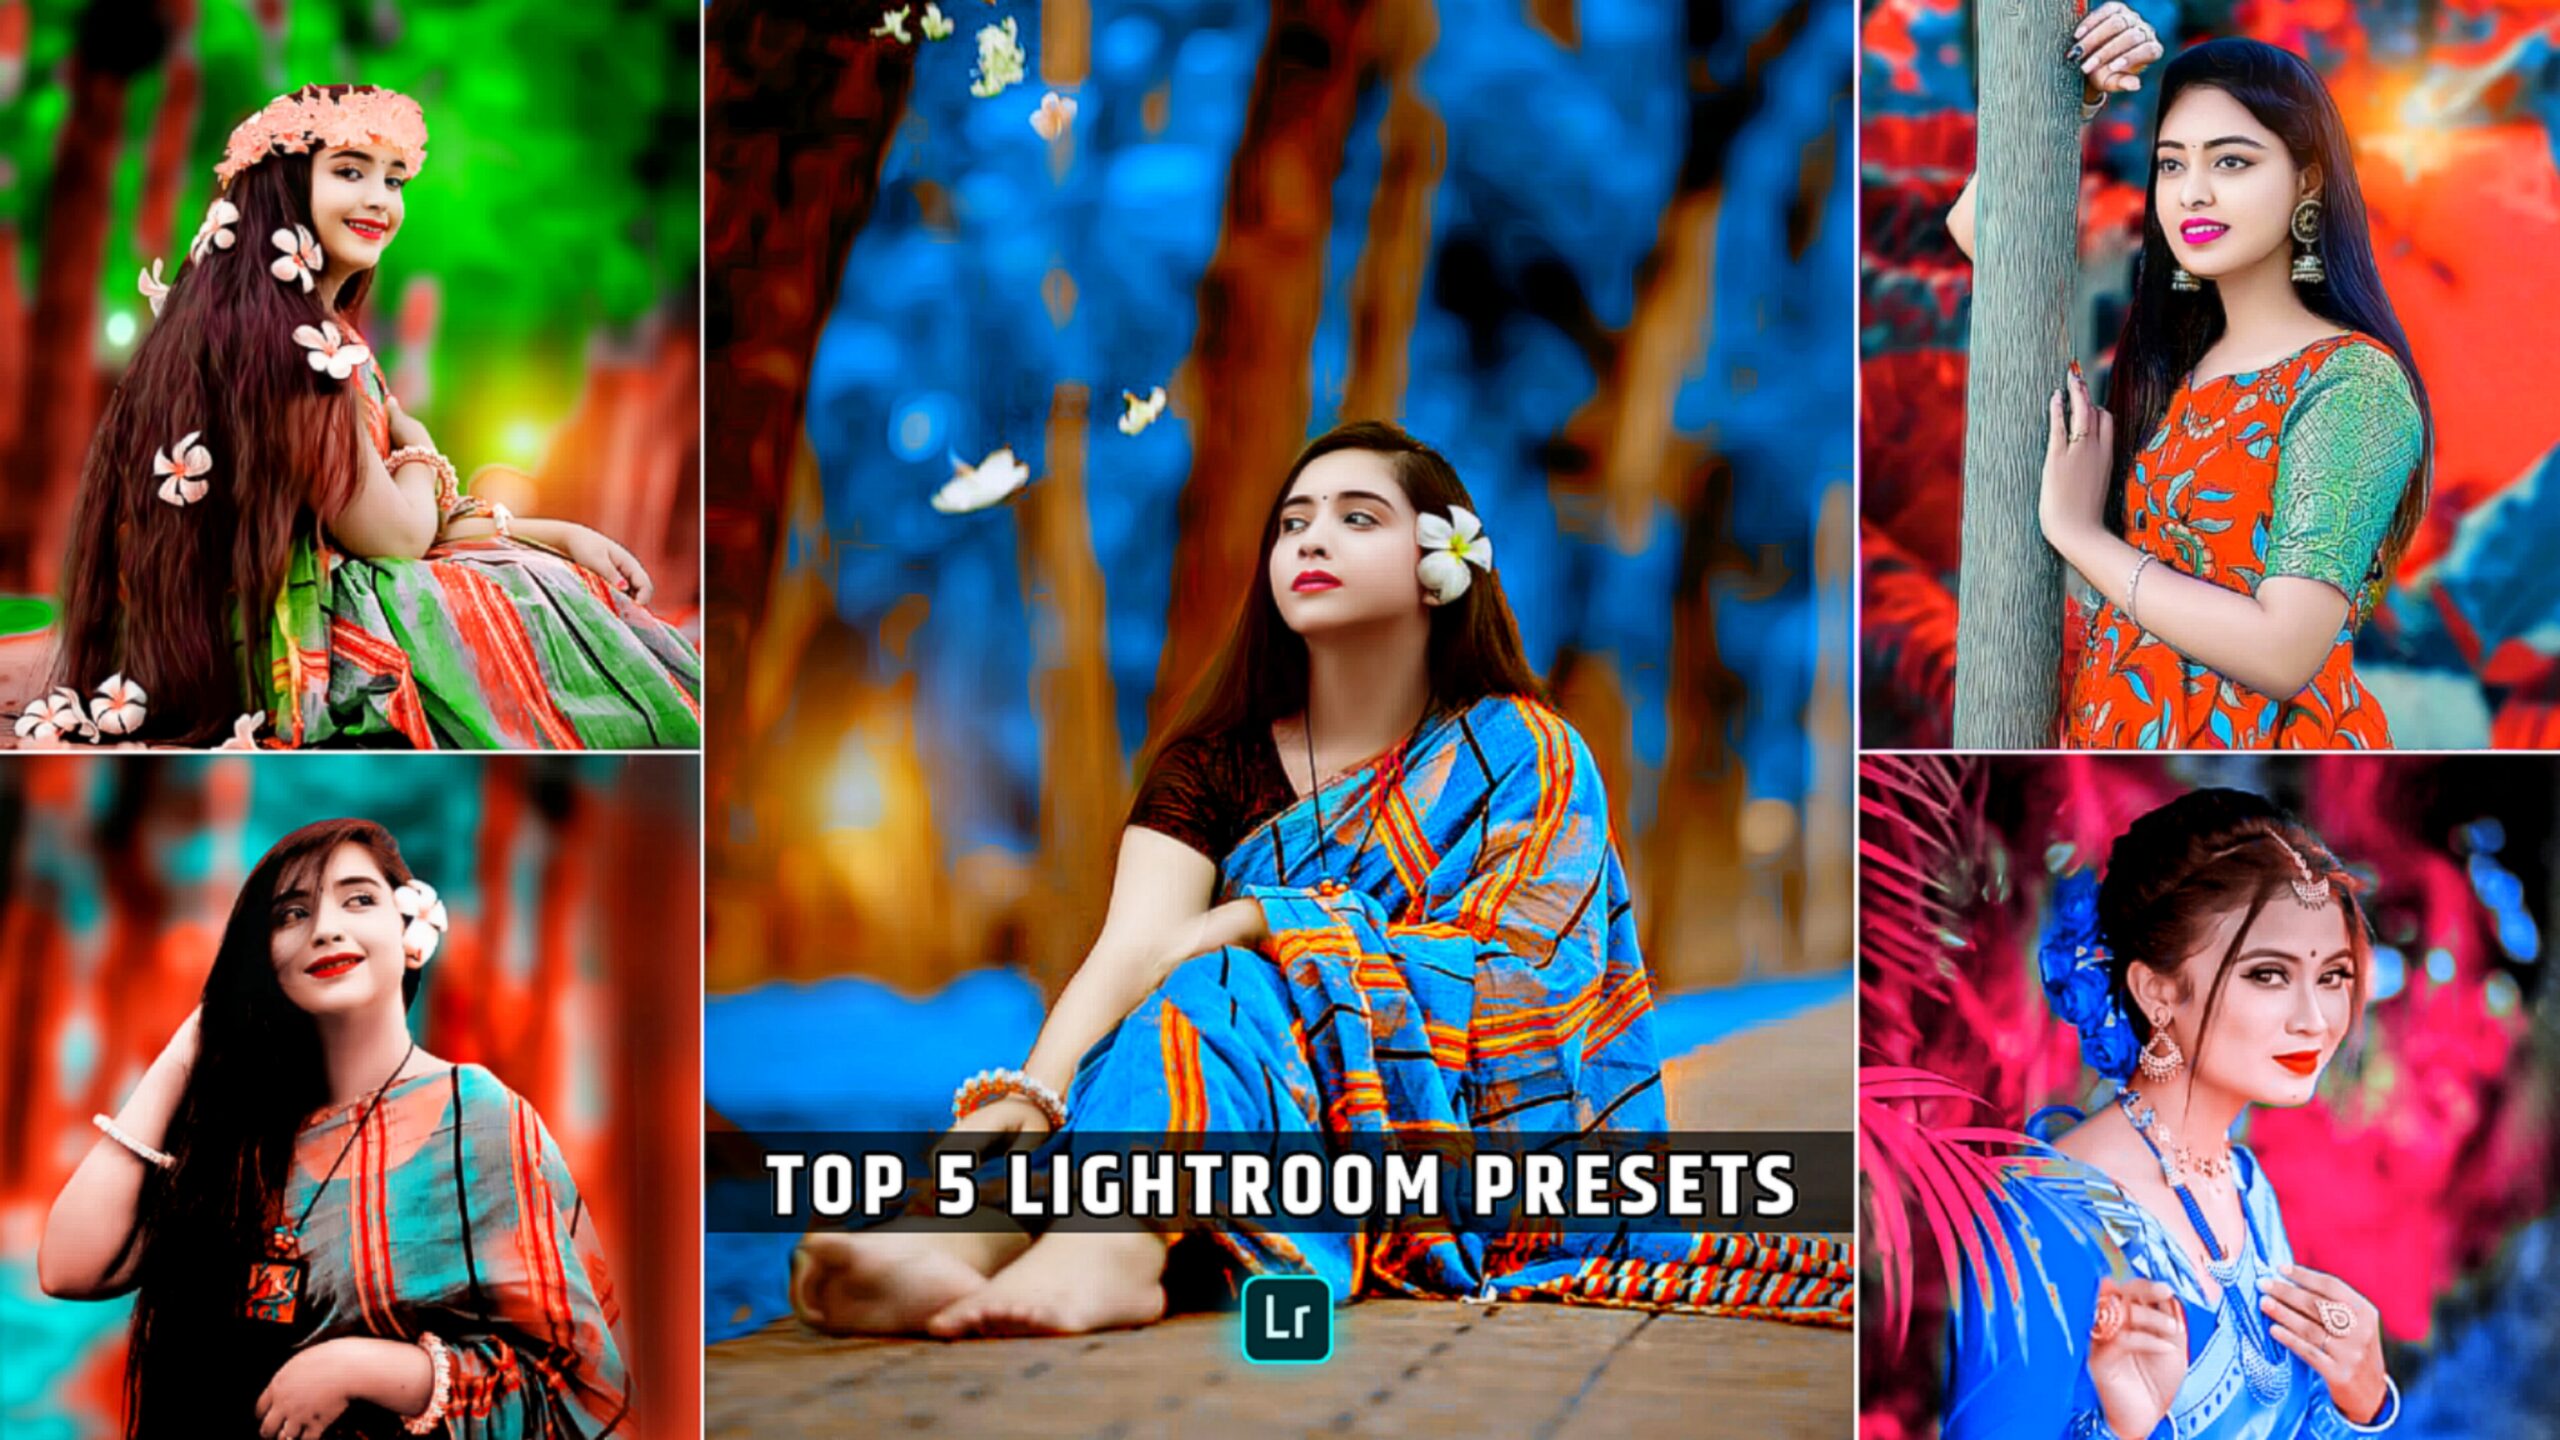 Top 5 lightroom presets free download | Razz suman